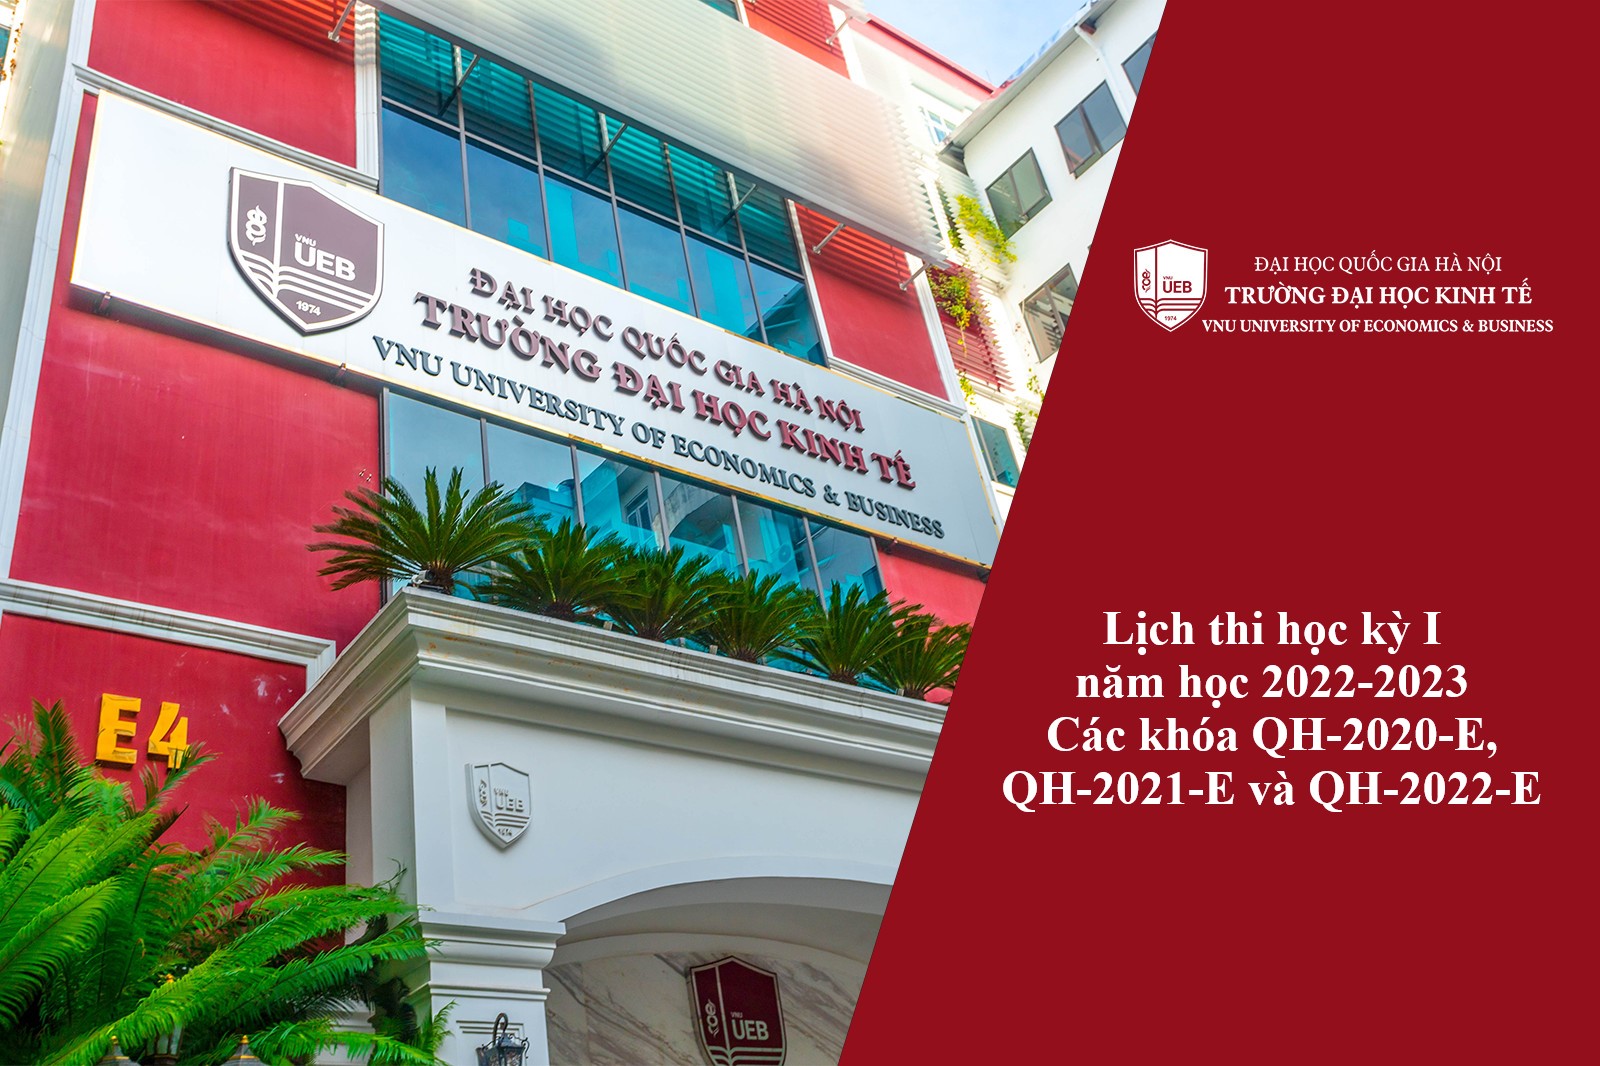 Lịch thi học kỳ I năm học 2022-2023 các khóa QH-2020-E, QH-2021-E và QH-2022-E